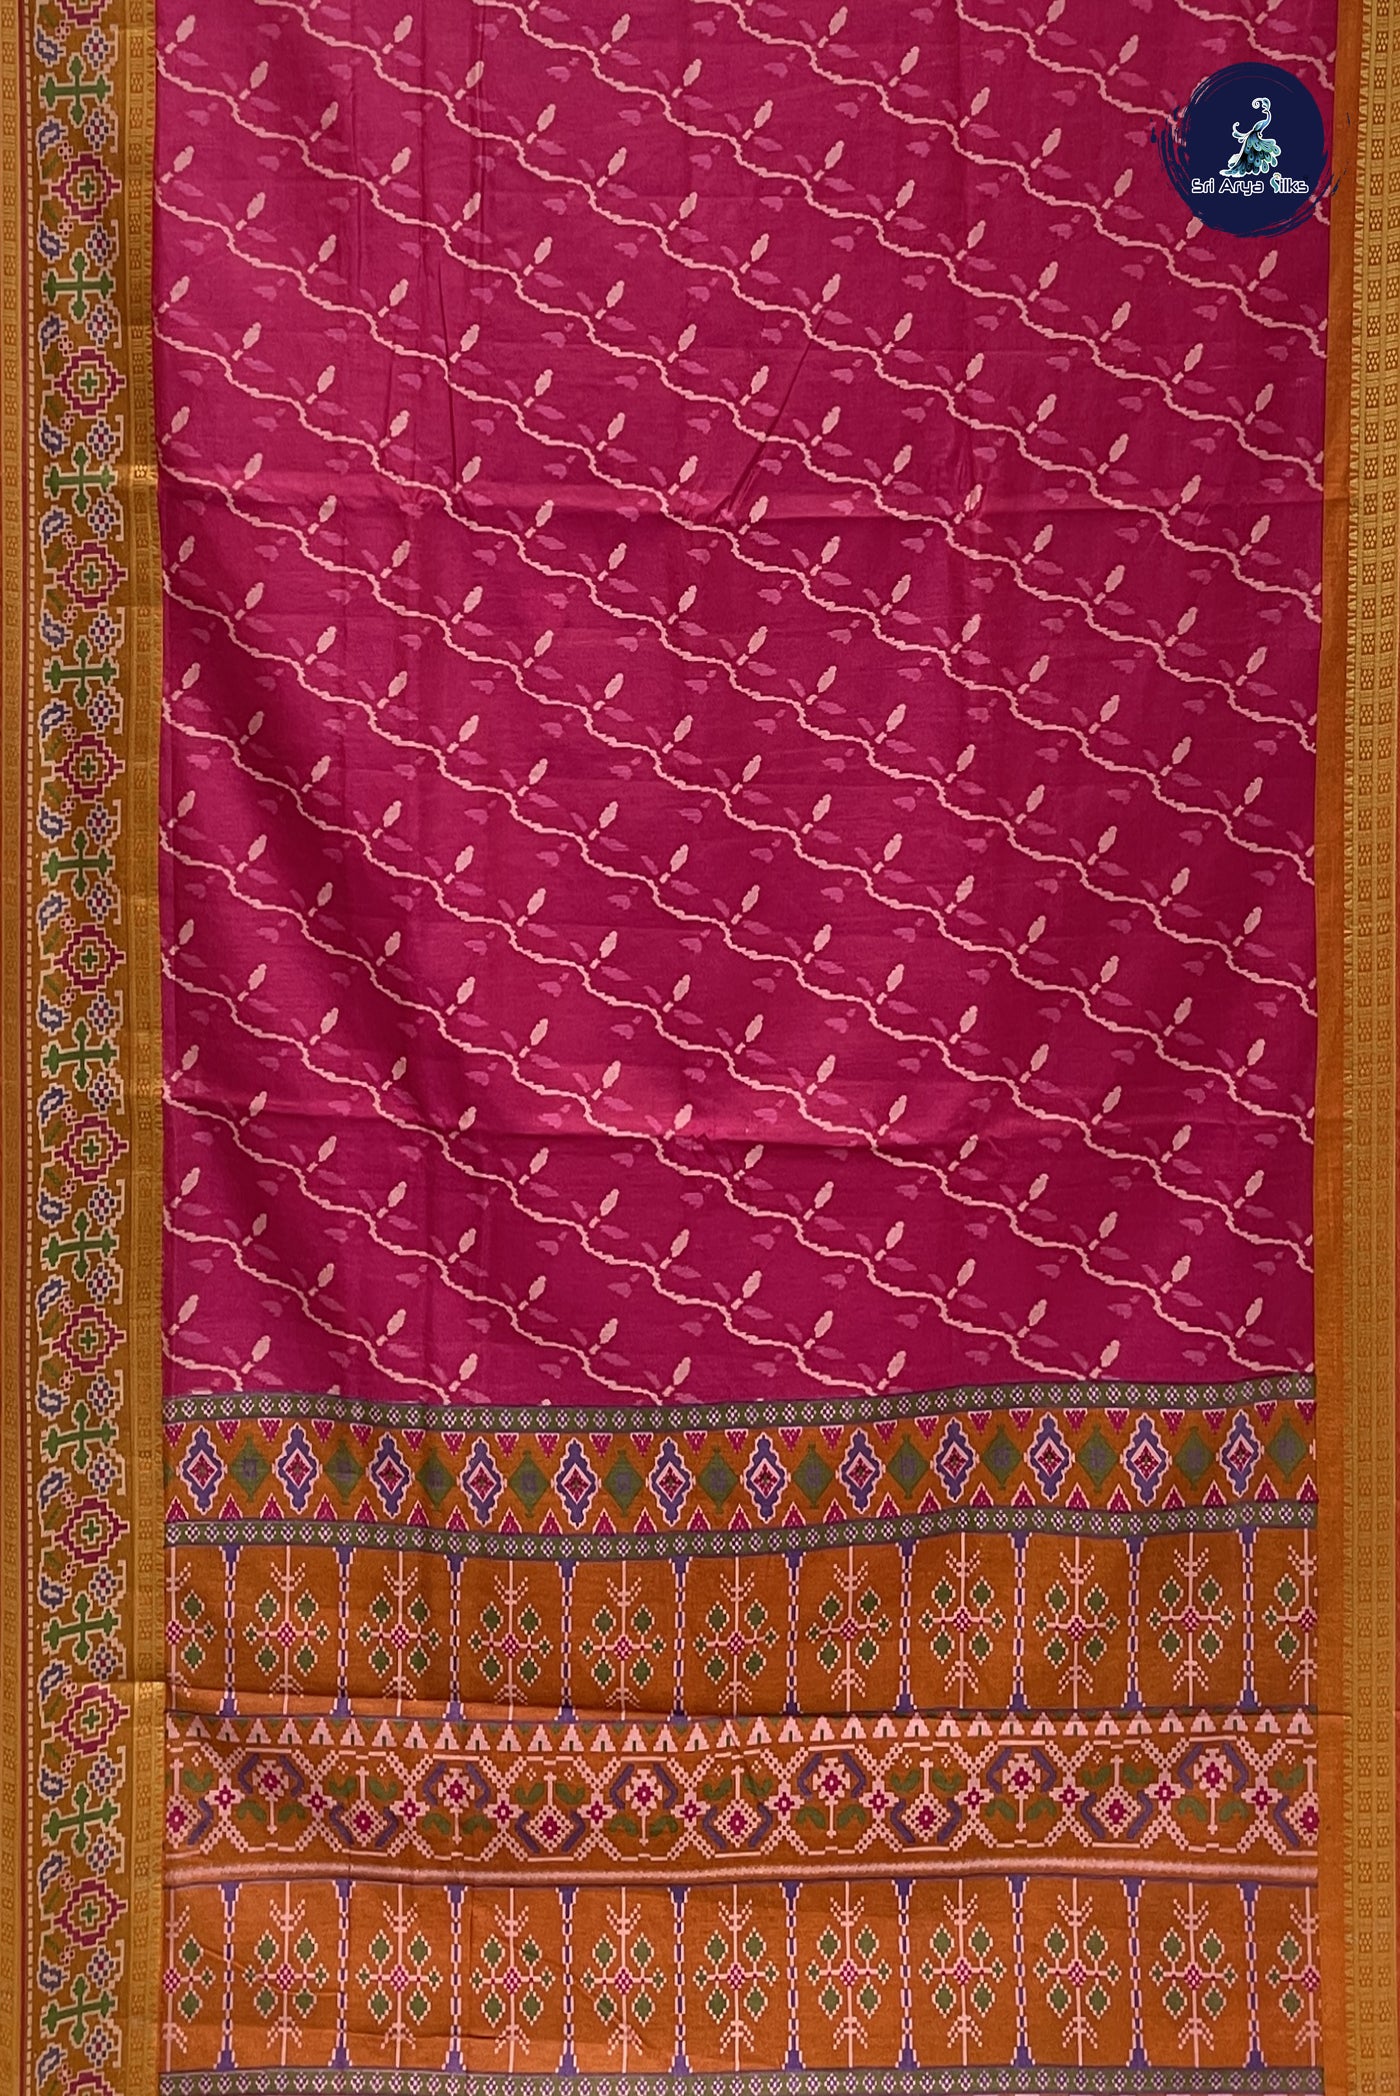 Rani Pink Semi Pattola Saree With Patola Pattern